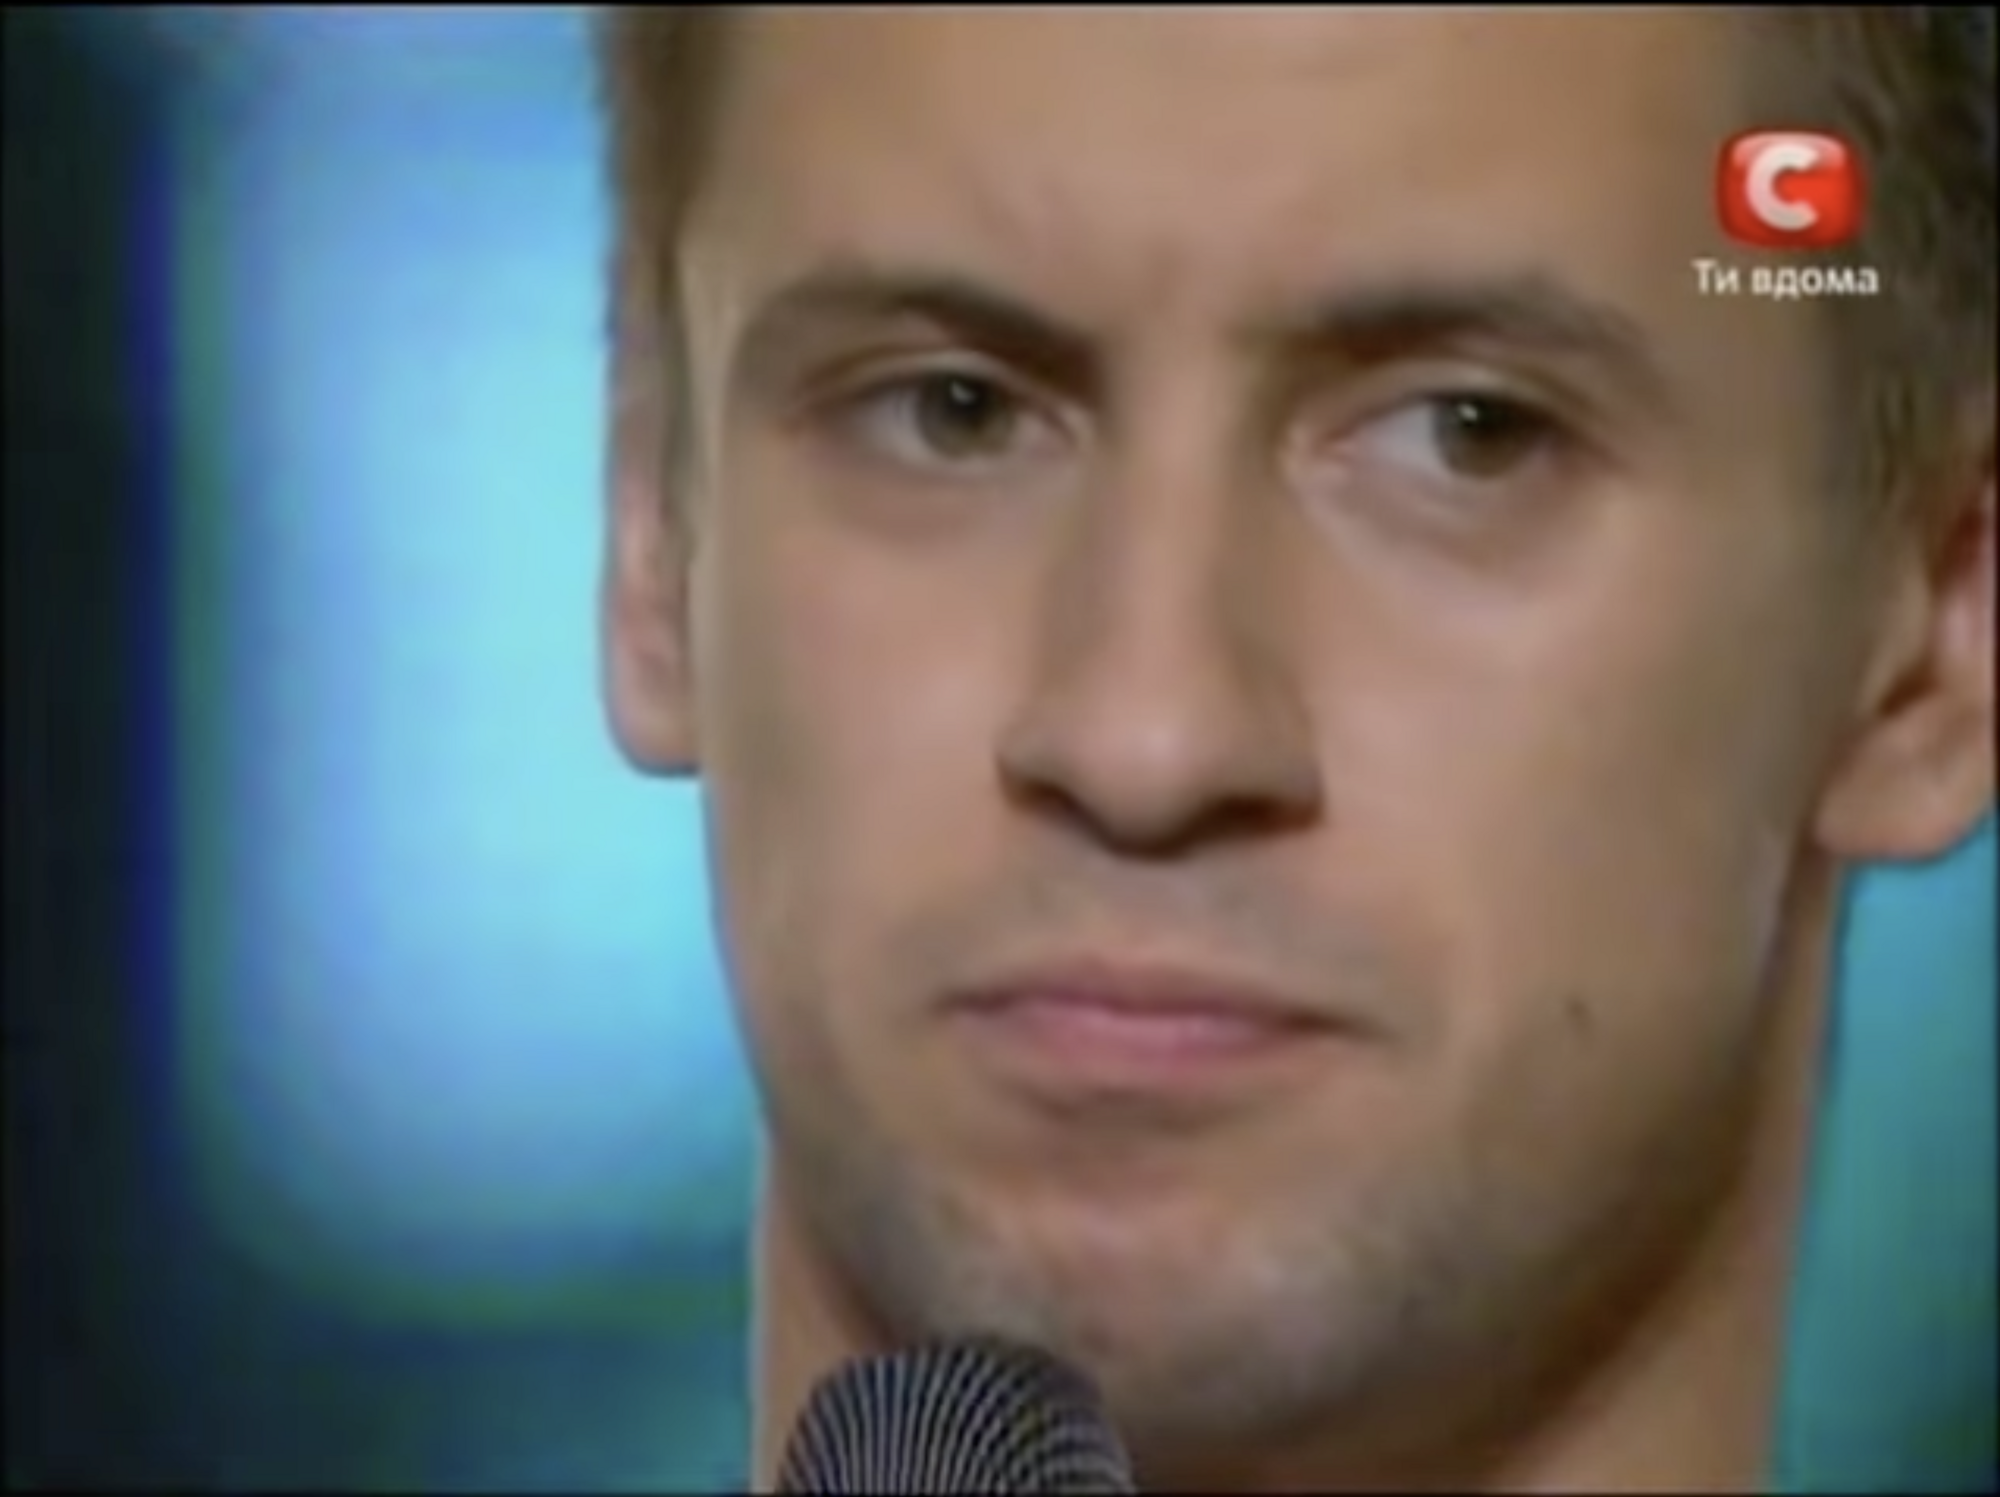  "Ти не будеш блищати": як у 2010 році Серьога спробував принизити Діму Монатіка на "Х-Факторі", а він став найкращим співаком України